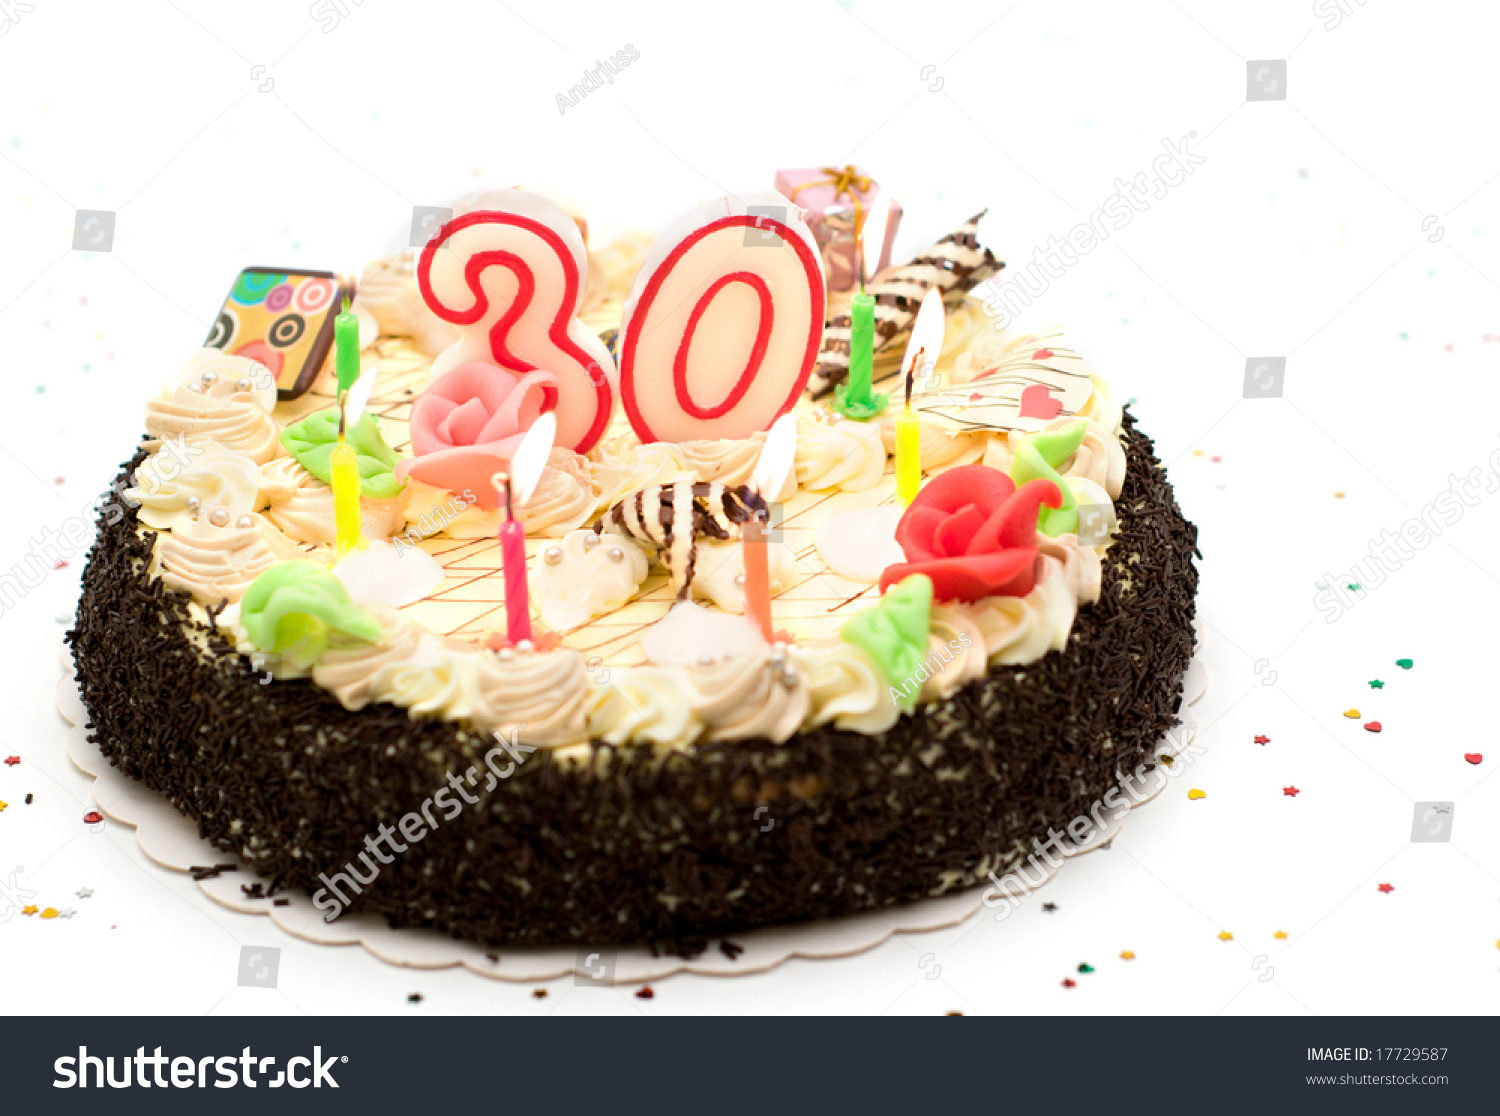 День рождения 30 мая. С днём рождения 30 лет. Торт на юбилей 30 лет. Тортик к 30 летию. С днем рождения юбилей 30 лет.